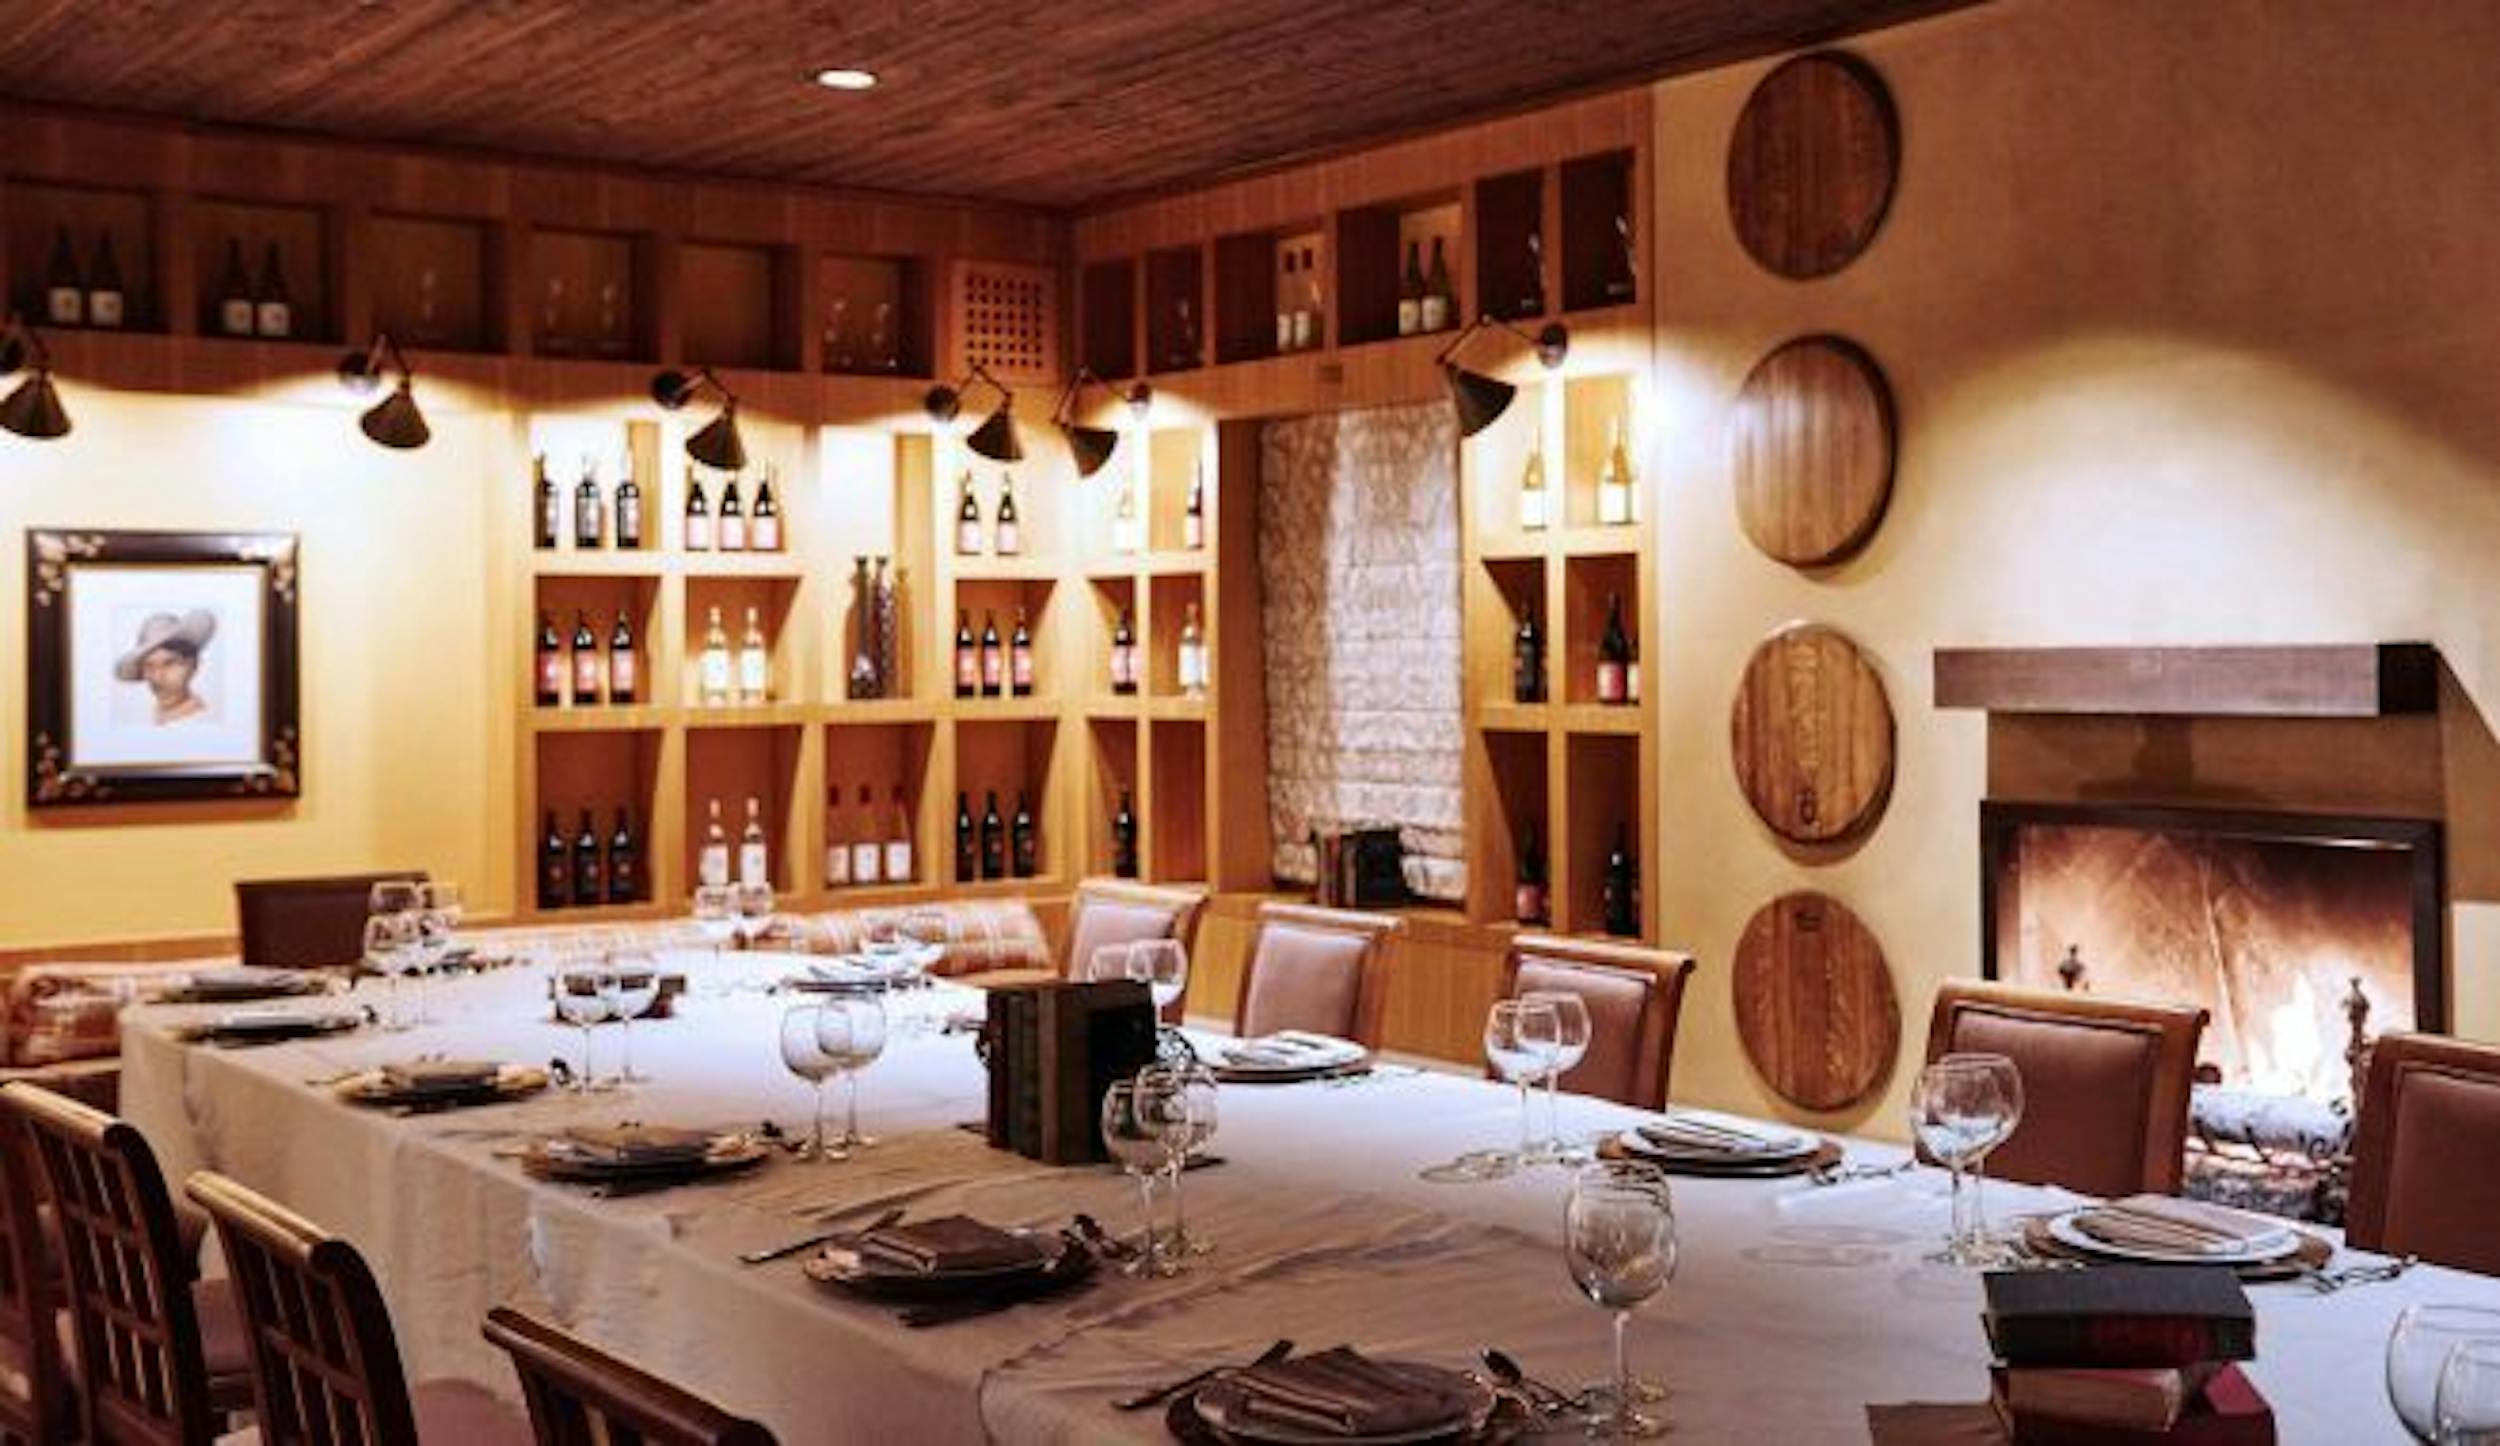 trinitas cellars private dining room